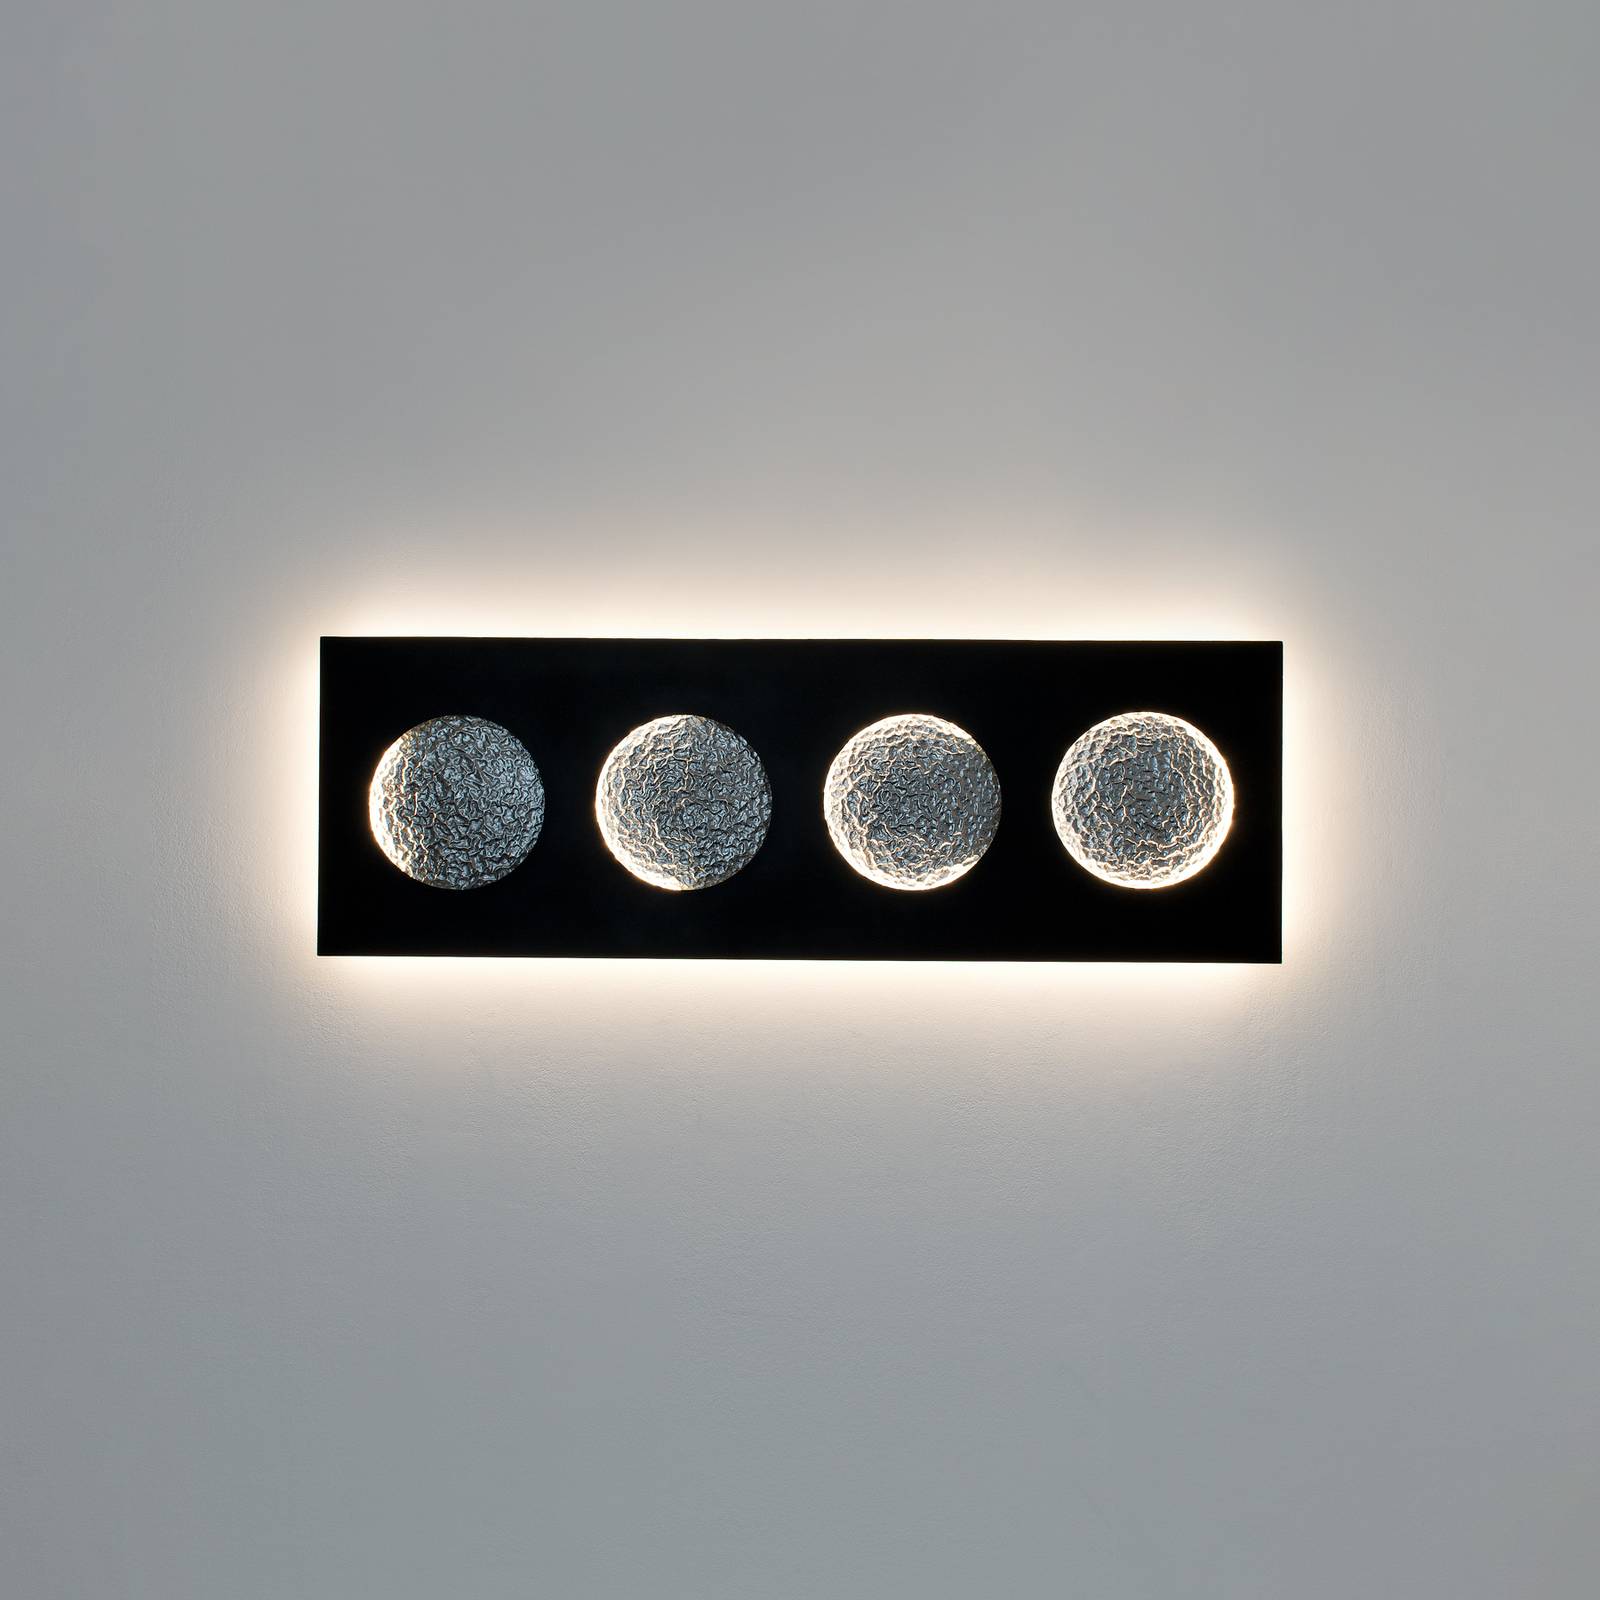 Holländer led fali világítás fasi della luna, fekete/ezüst